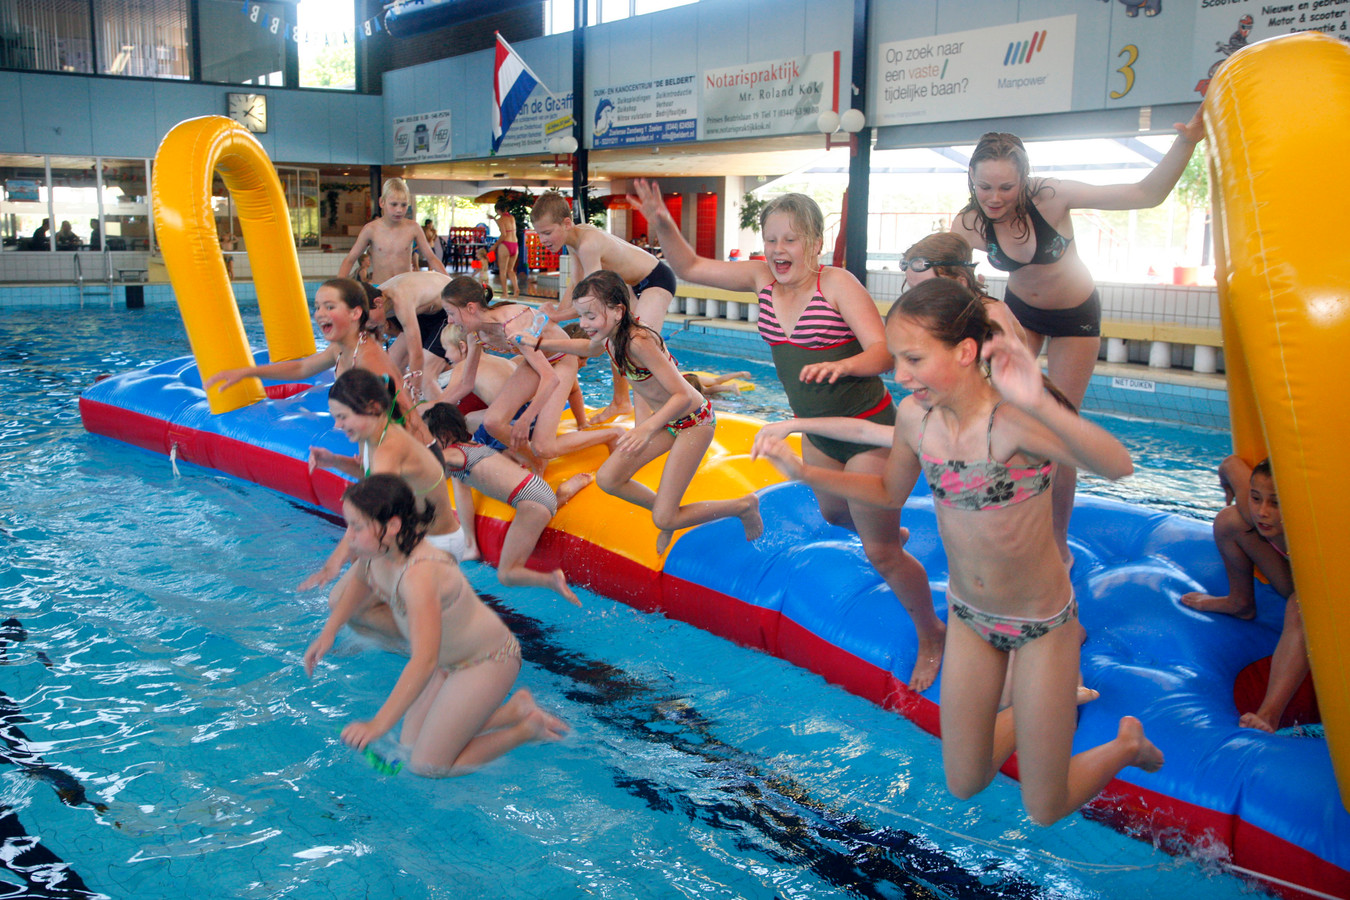 regeren Bedoel Praten tegen Uur van de waarheid voor zwembad in Tiel | Foto | gelderlander.nl